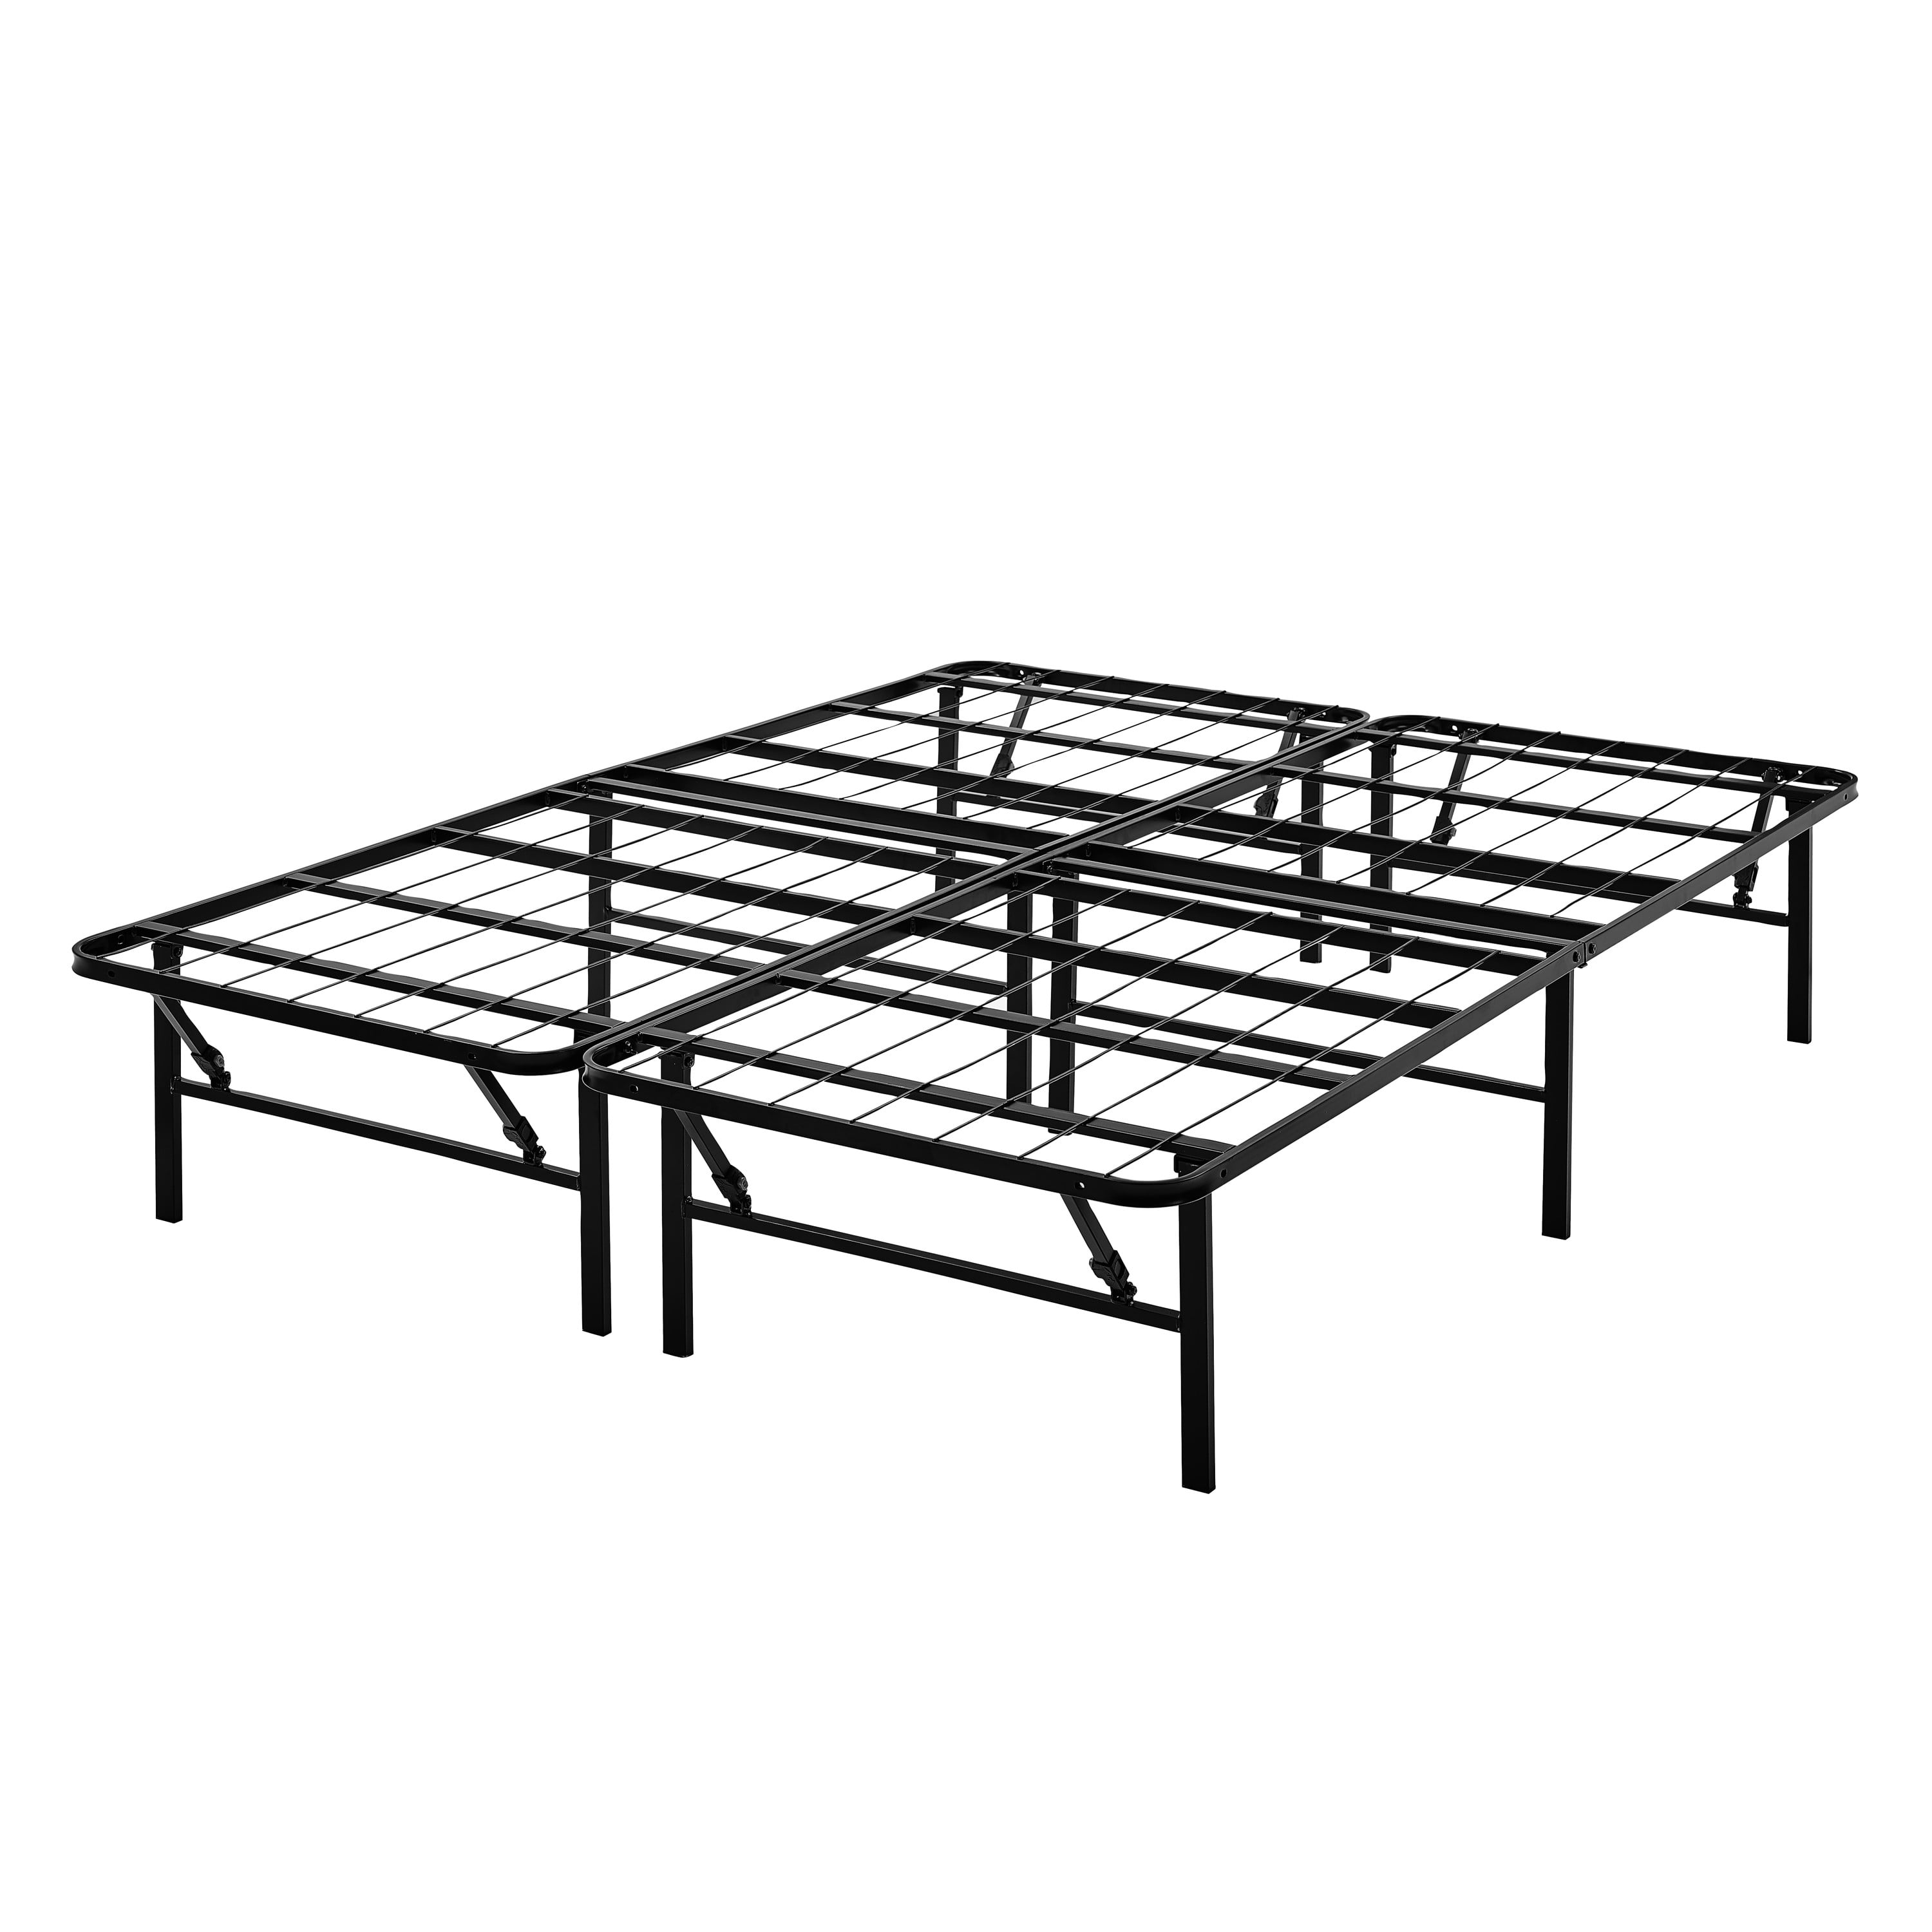 Profile Foldable Steel Bed Frame, Mainstays 12 Adjustable Metal Bed Frame Black Twin King Size